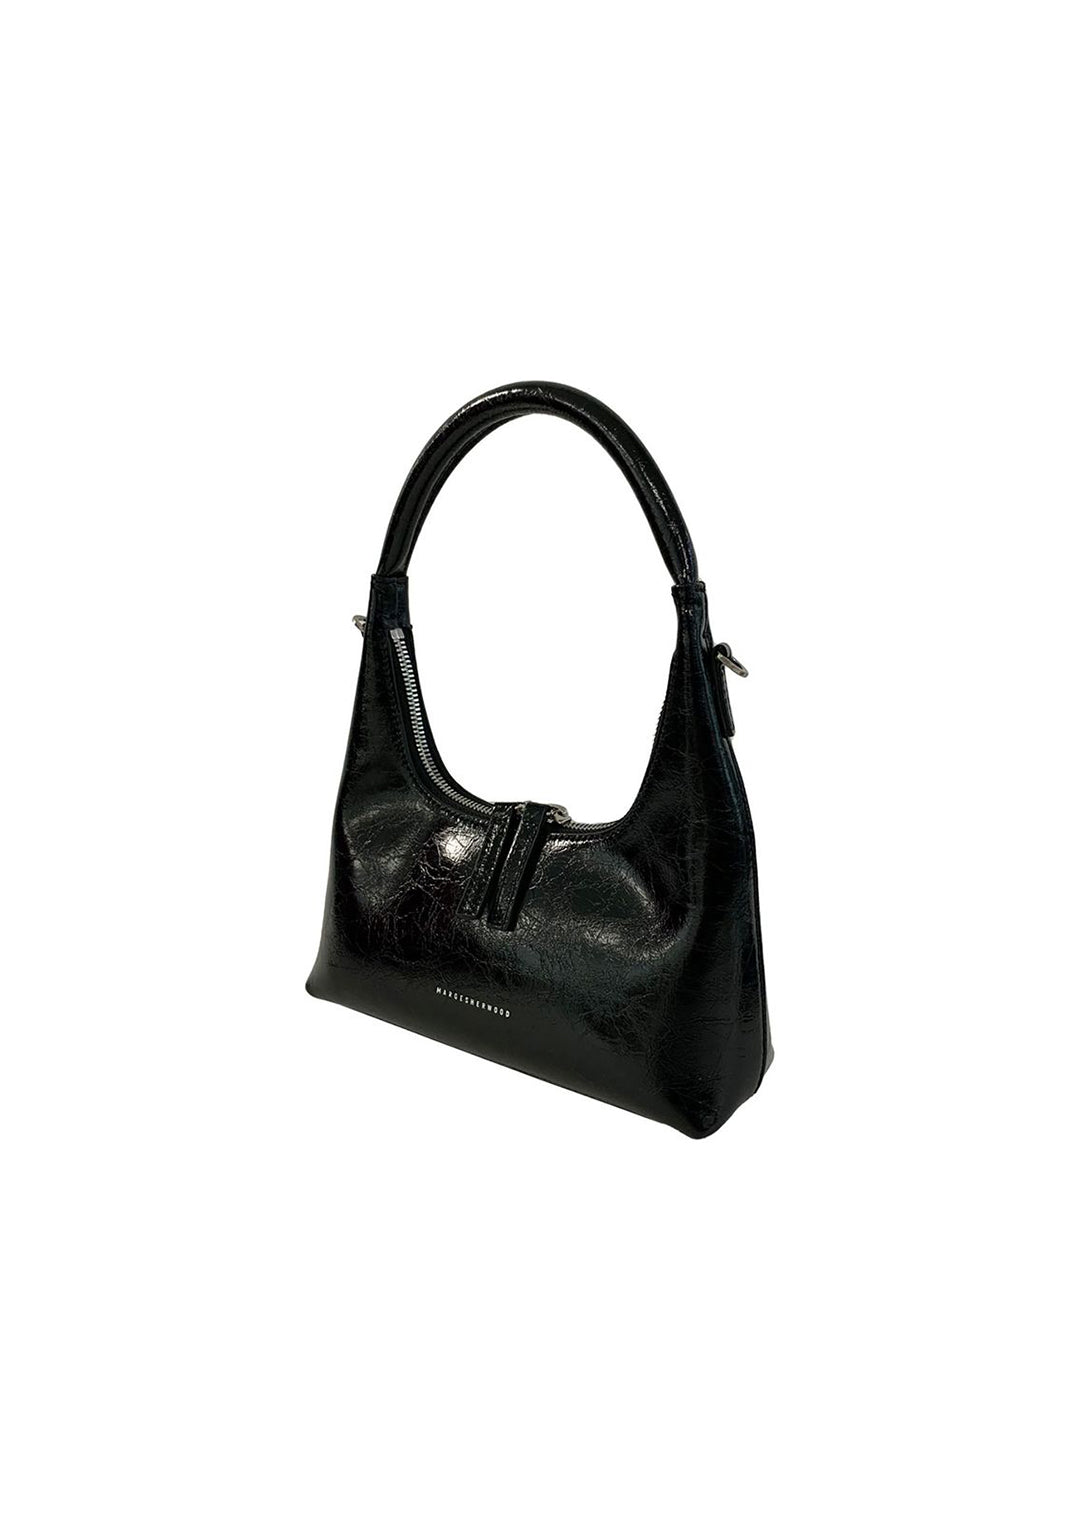 Find the latest Hobo Shoulder Bag - Black Crinkle Marge Sherwood for less